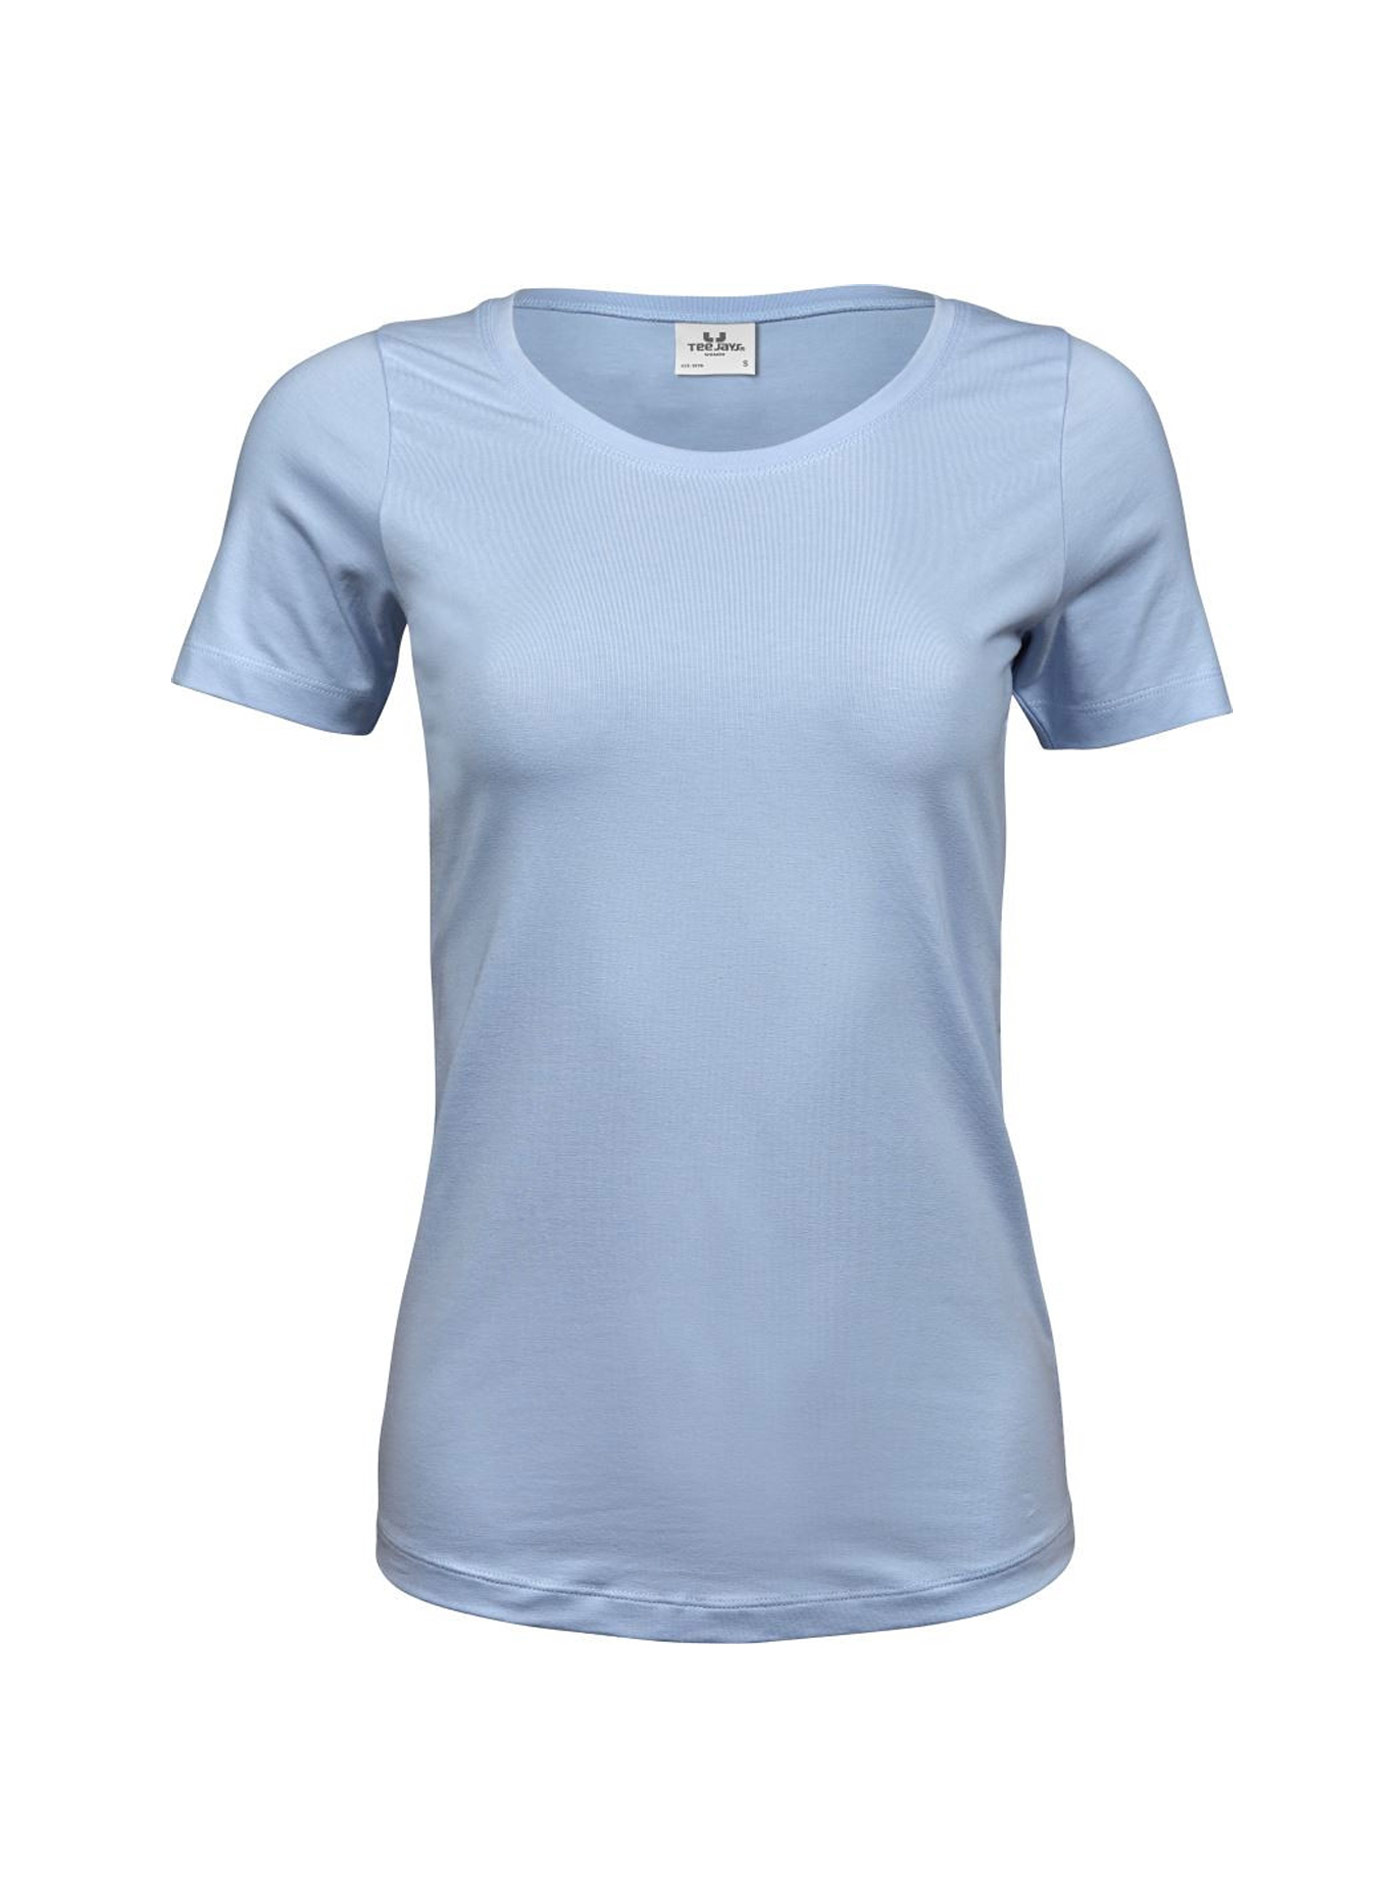 Dámské Stretch Tee tričko Tee Jays - světle modrá S